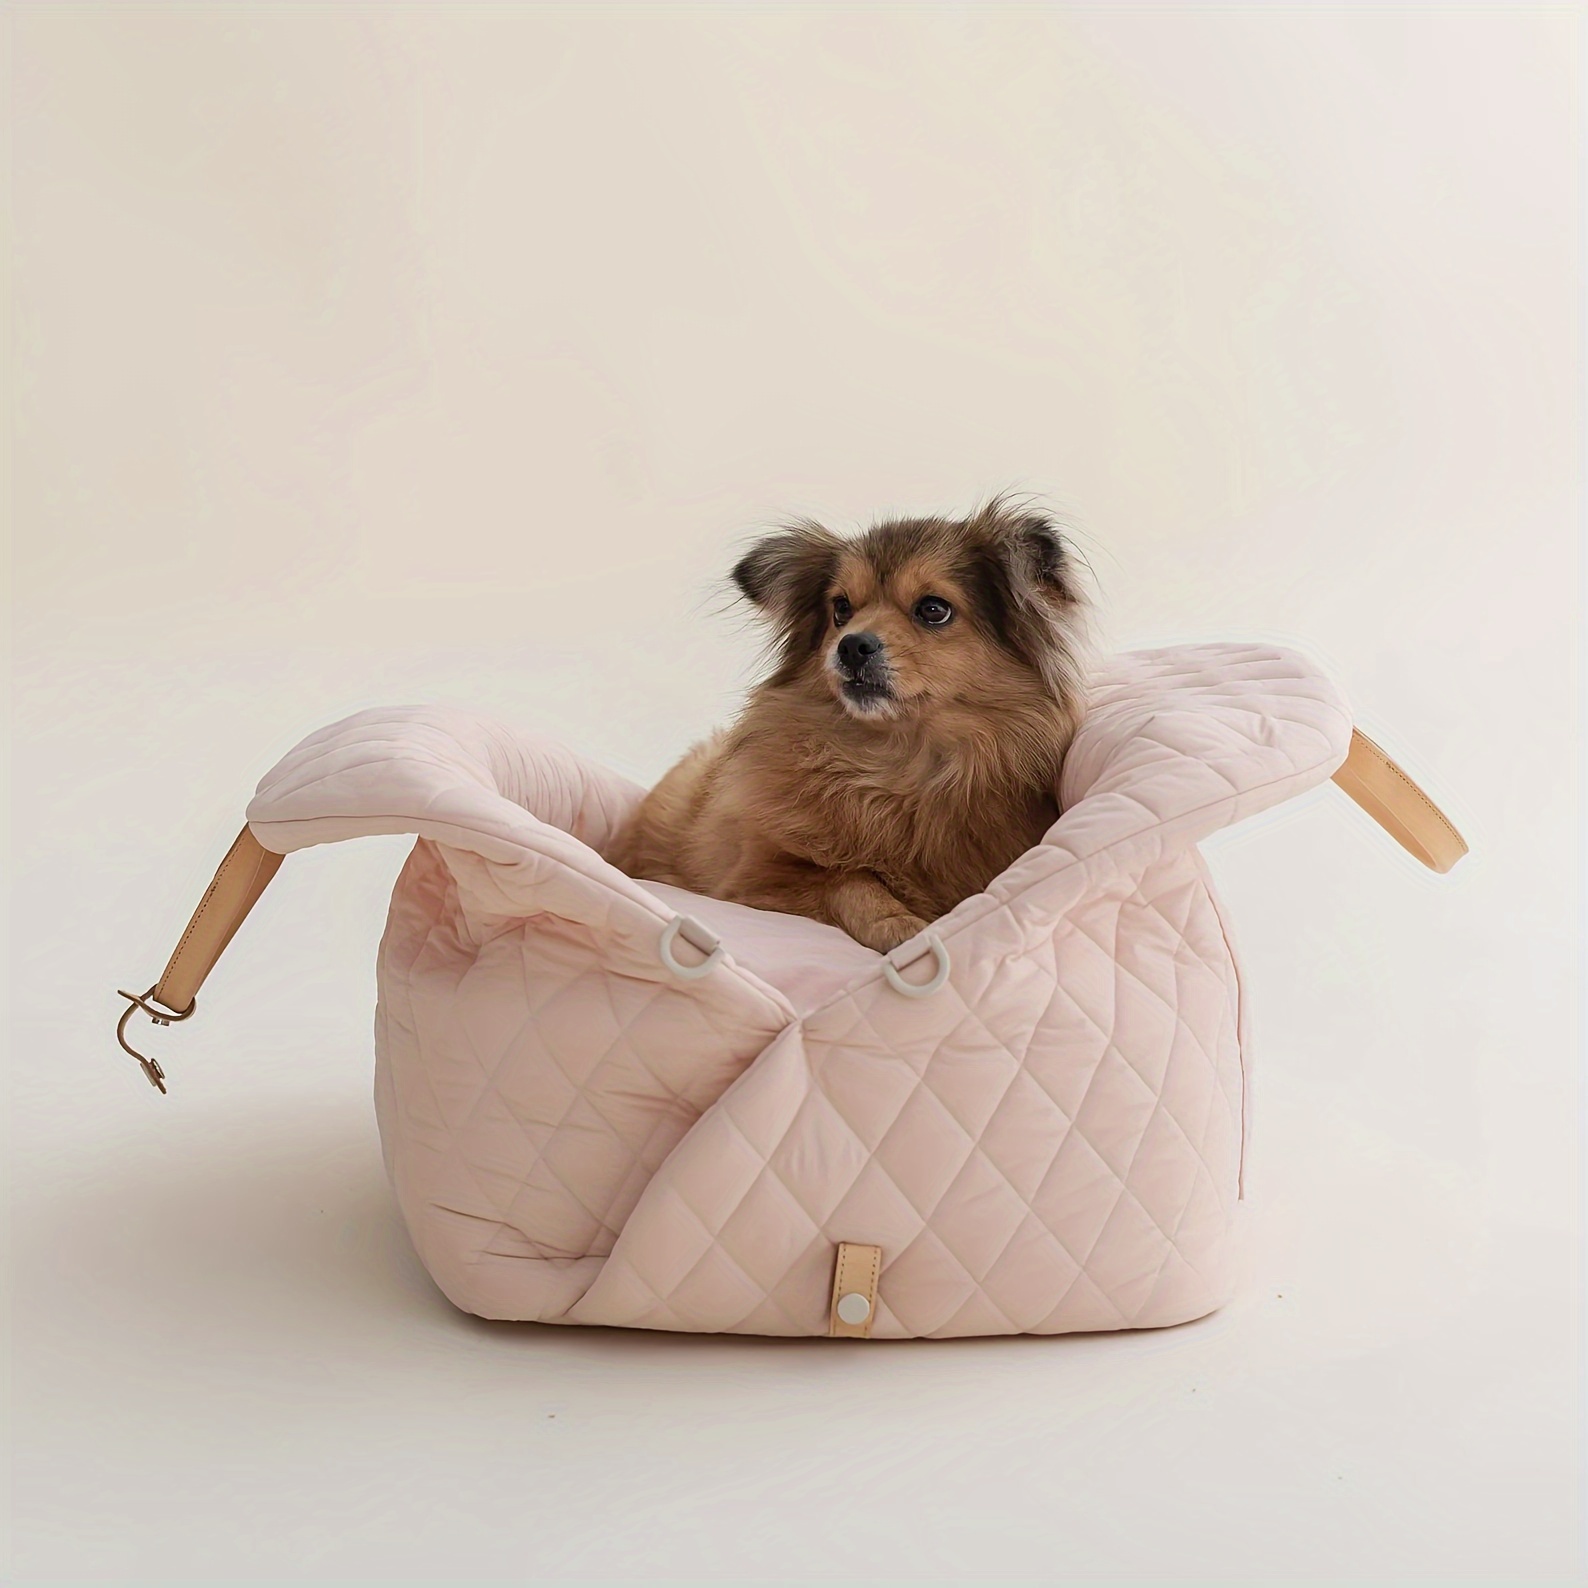 KYLEX Sac de transport pour animaux de compagnie siège de voiture pour  chien lit portable pour chien chat tapis couverture siège de sécurité voiture  pour chat petit chien chihuahua nounours (couleur 